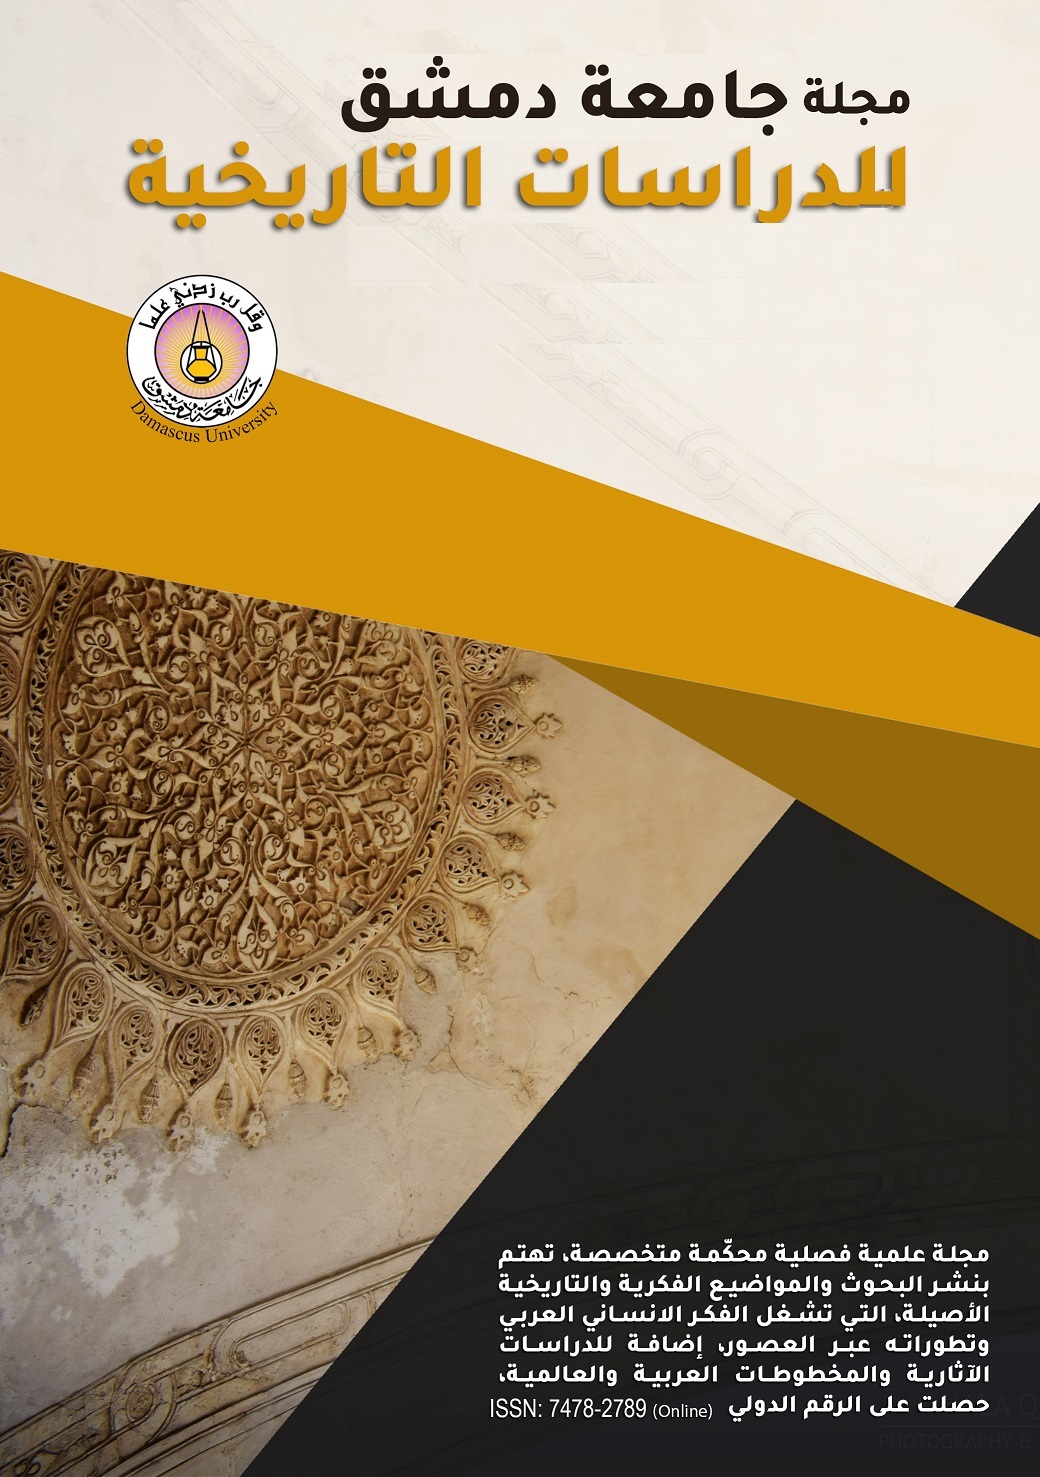 					معاينة مجلد 142 عدد 3 (2022): مجلة جامعة دمشق للدراسات التاريخية
				